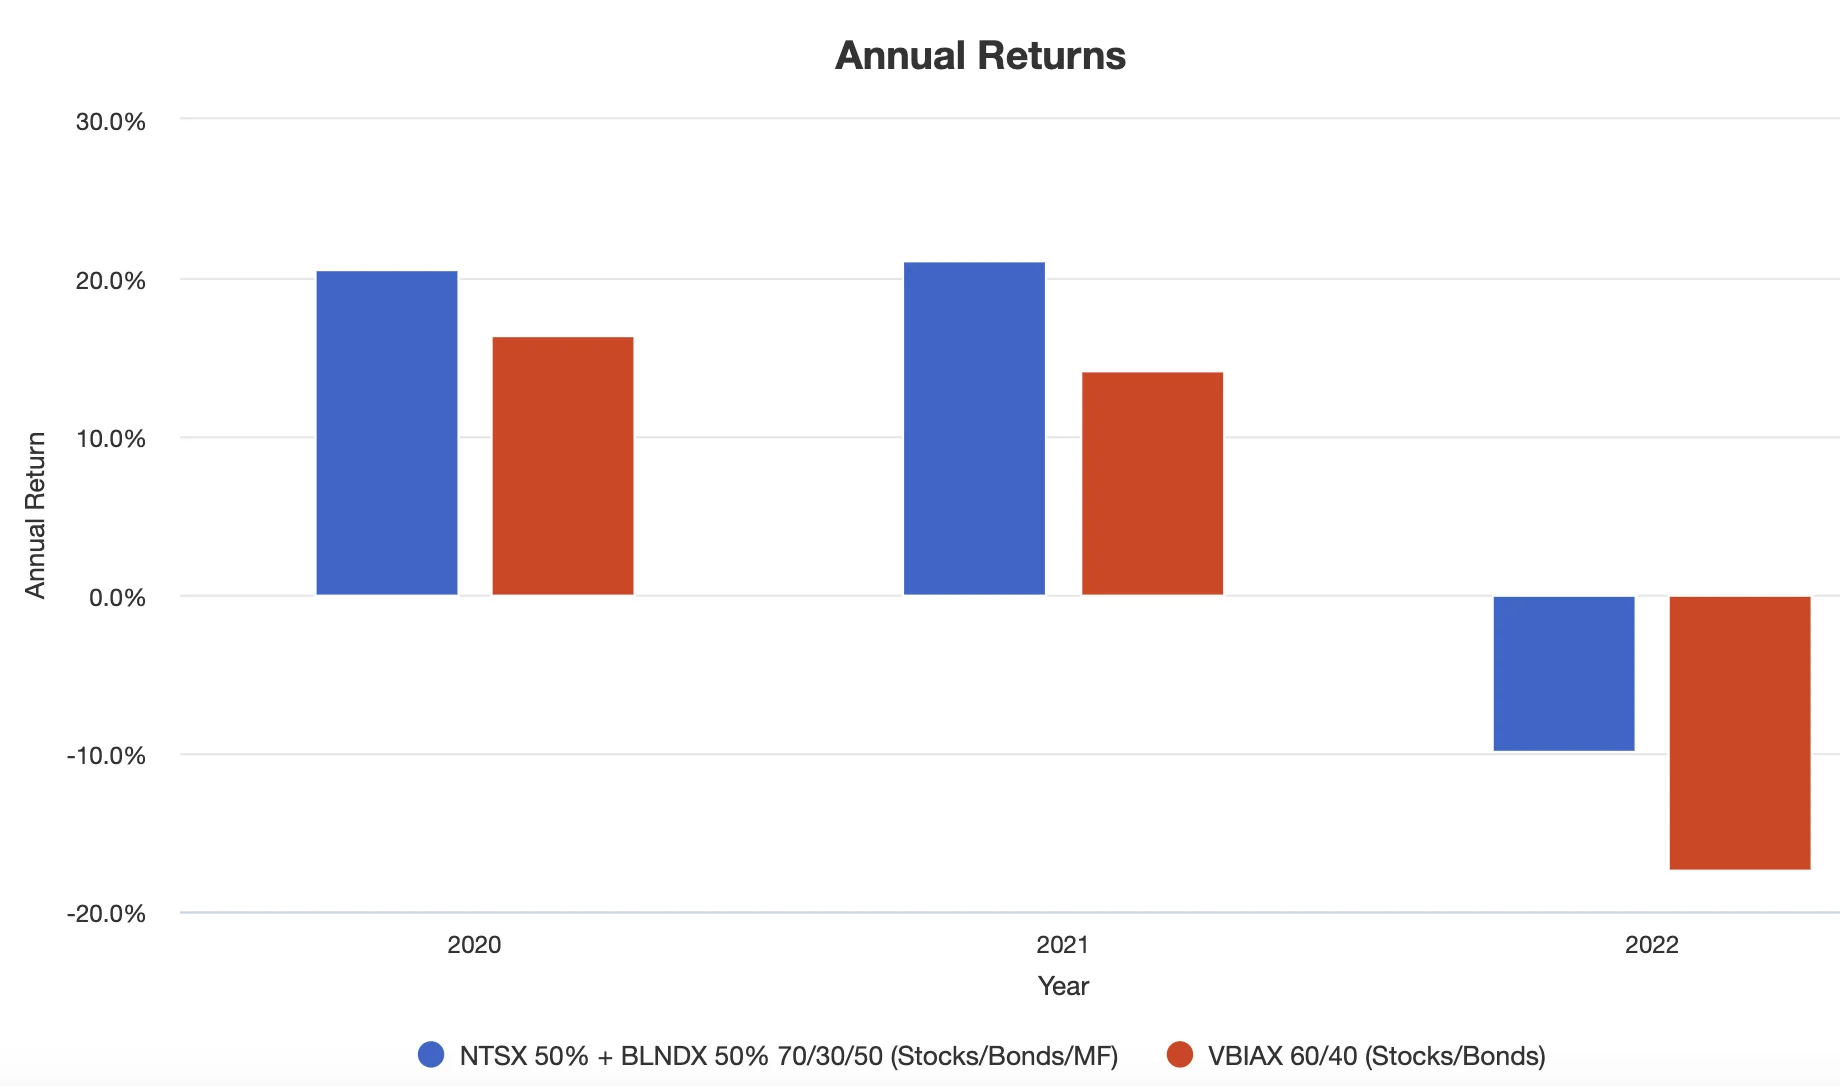 NTSX + BLNDX annual returns versus the 60/40 portfolio 